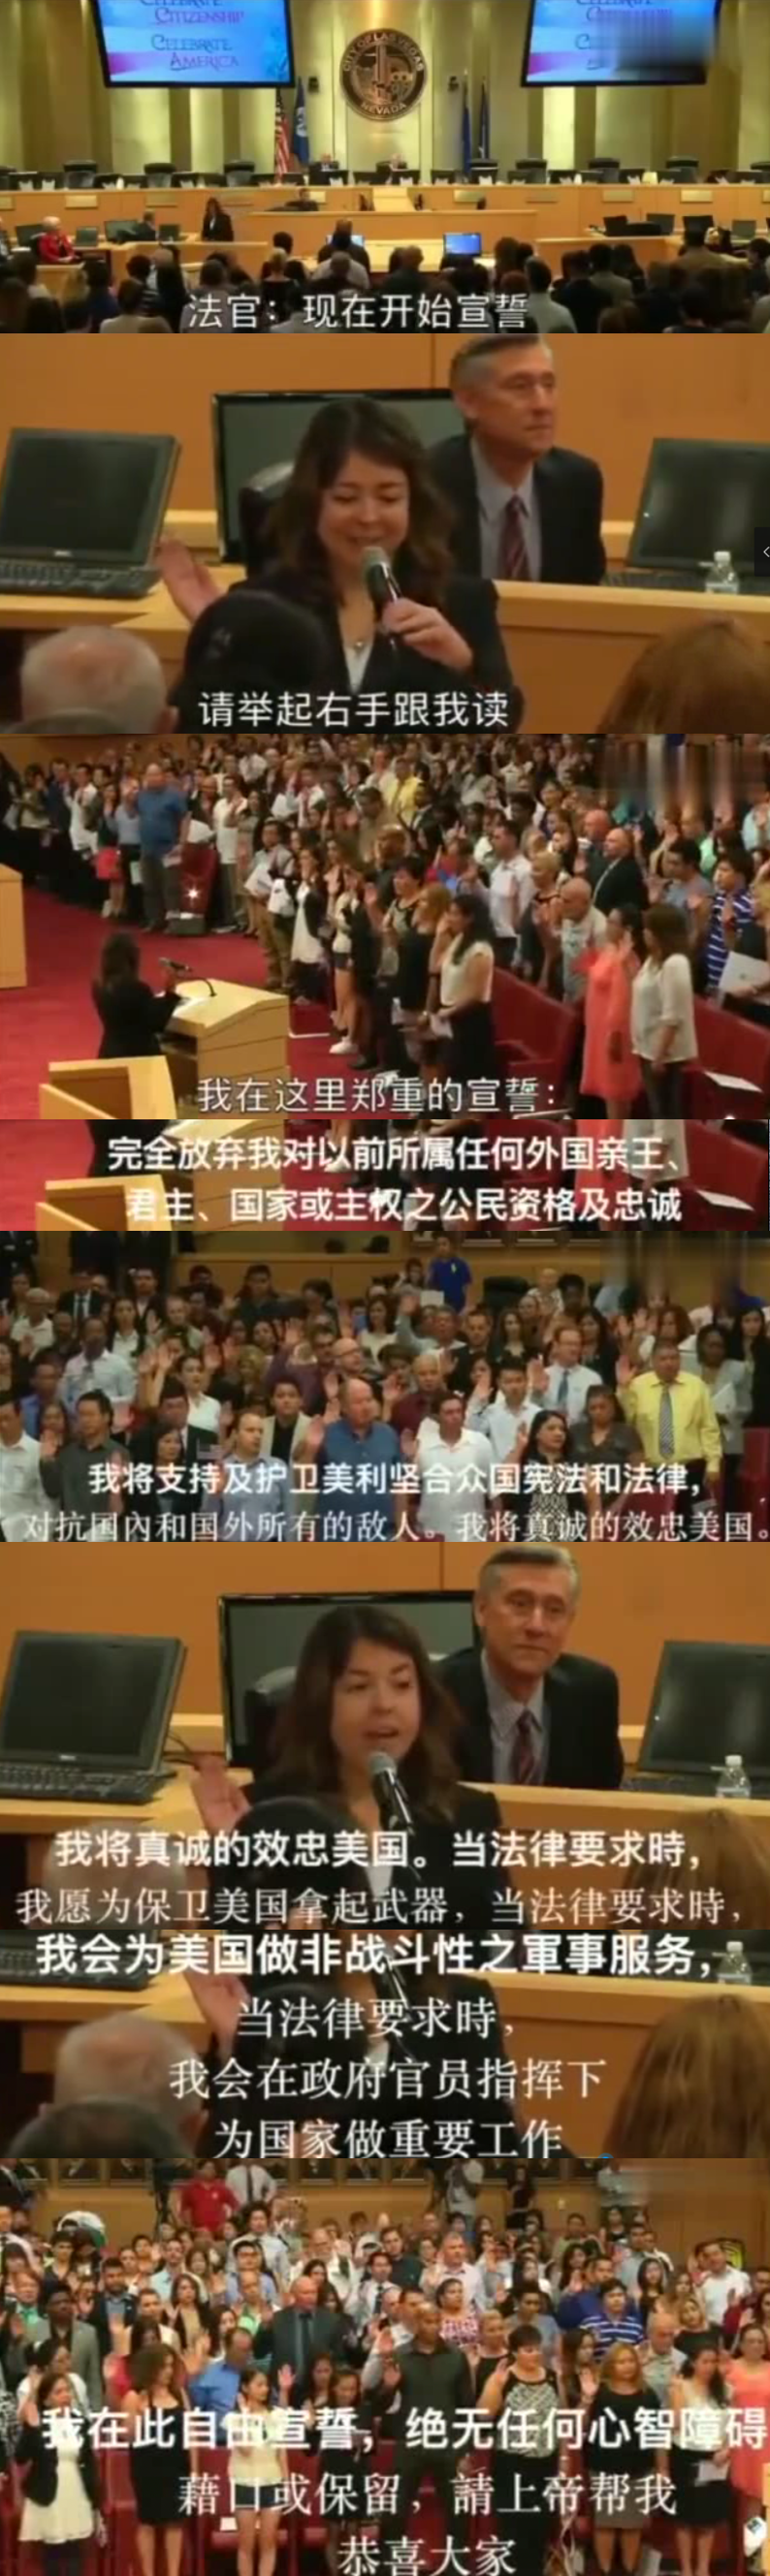 来看看加入外国国籍时的宣誓现场,你还相信我的心在中国吗?